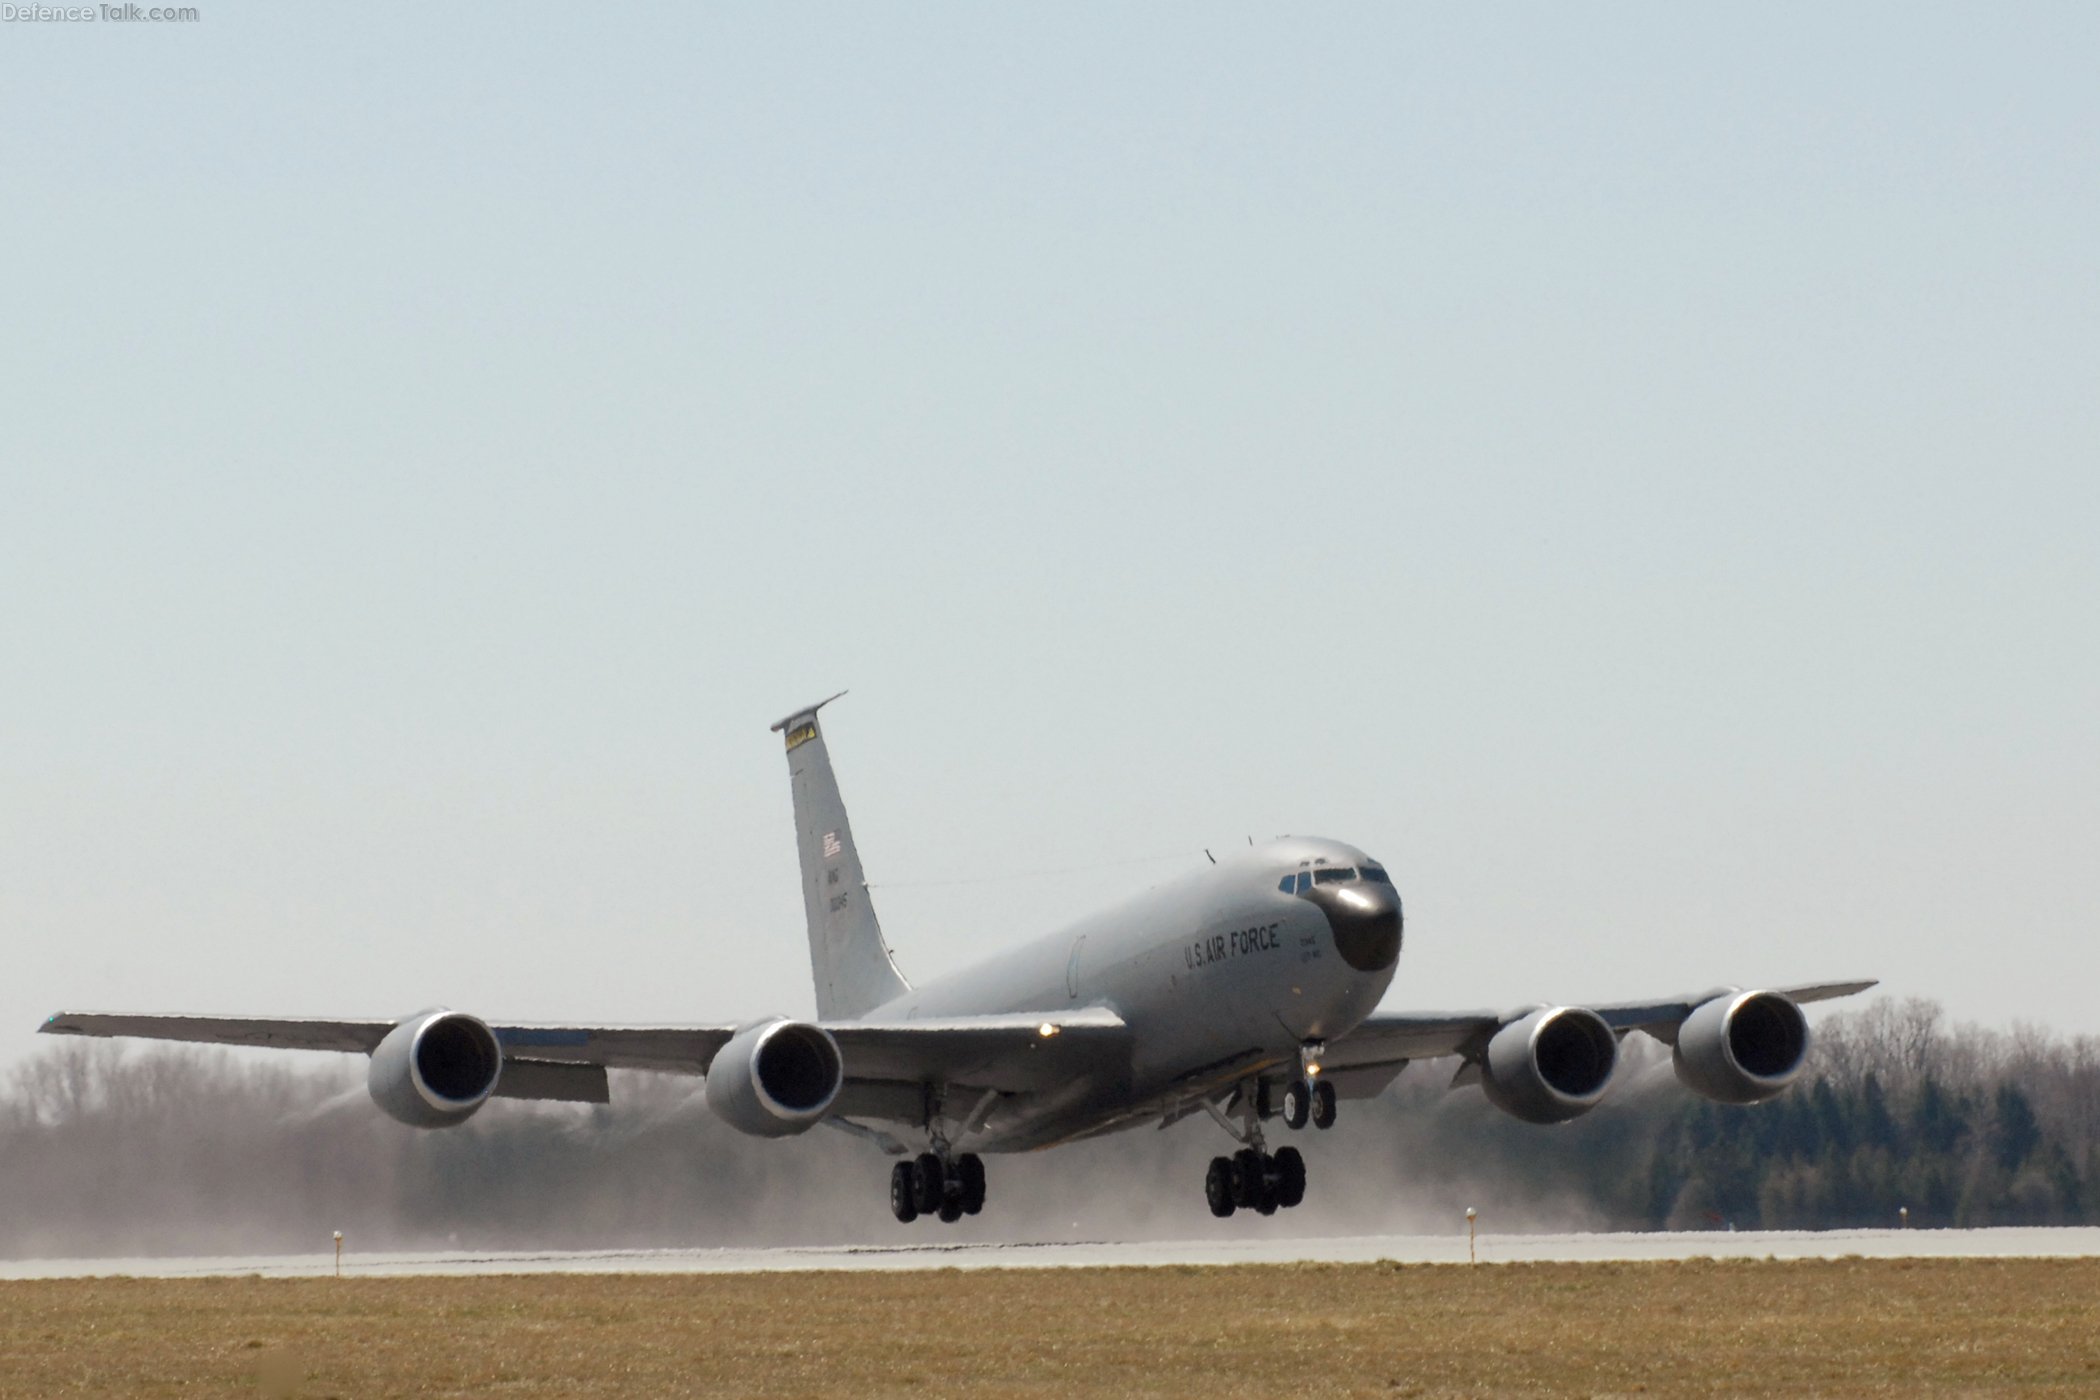 KC-135 Stratotanker takes off